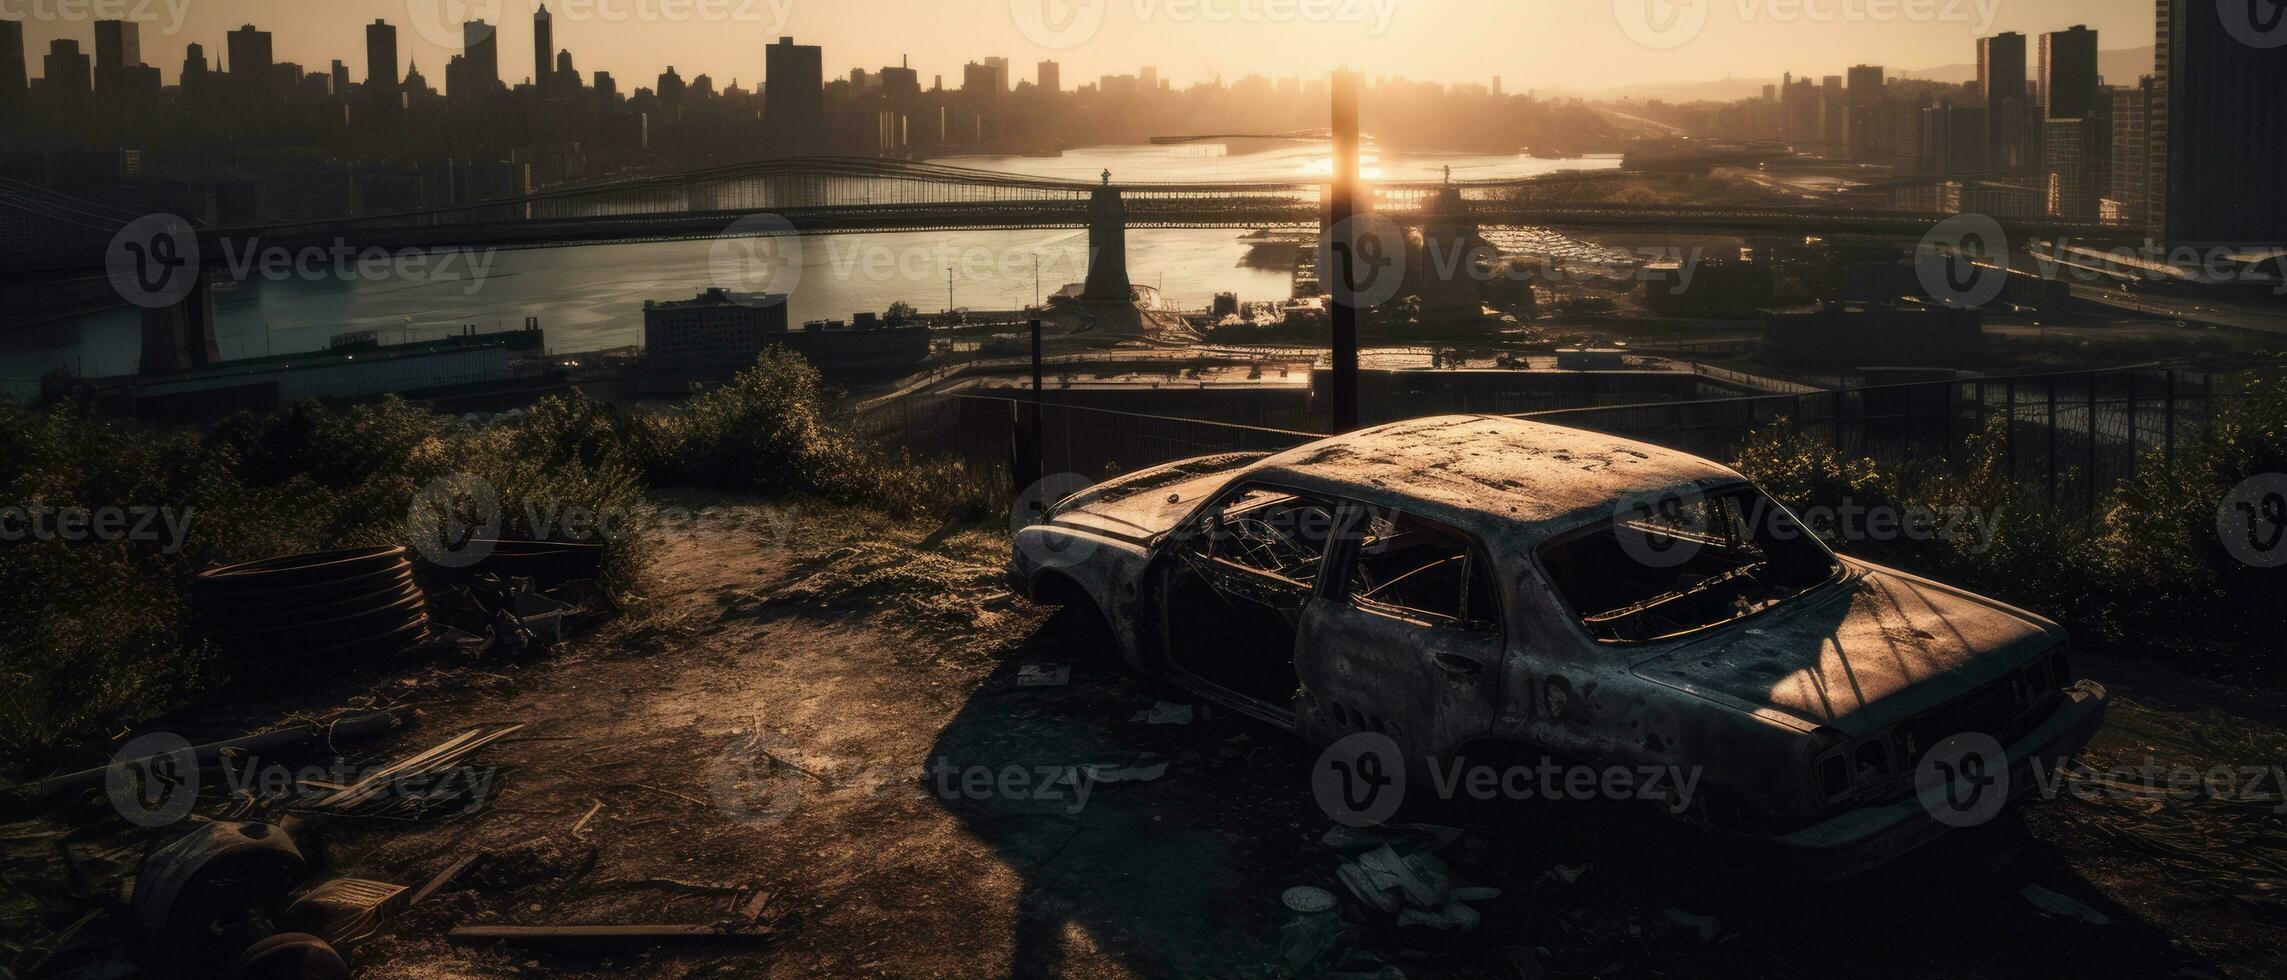 stad landschap zonsopkomst stof mist Apocalypse landschap spel behang foto kunst illustratie Roest